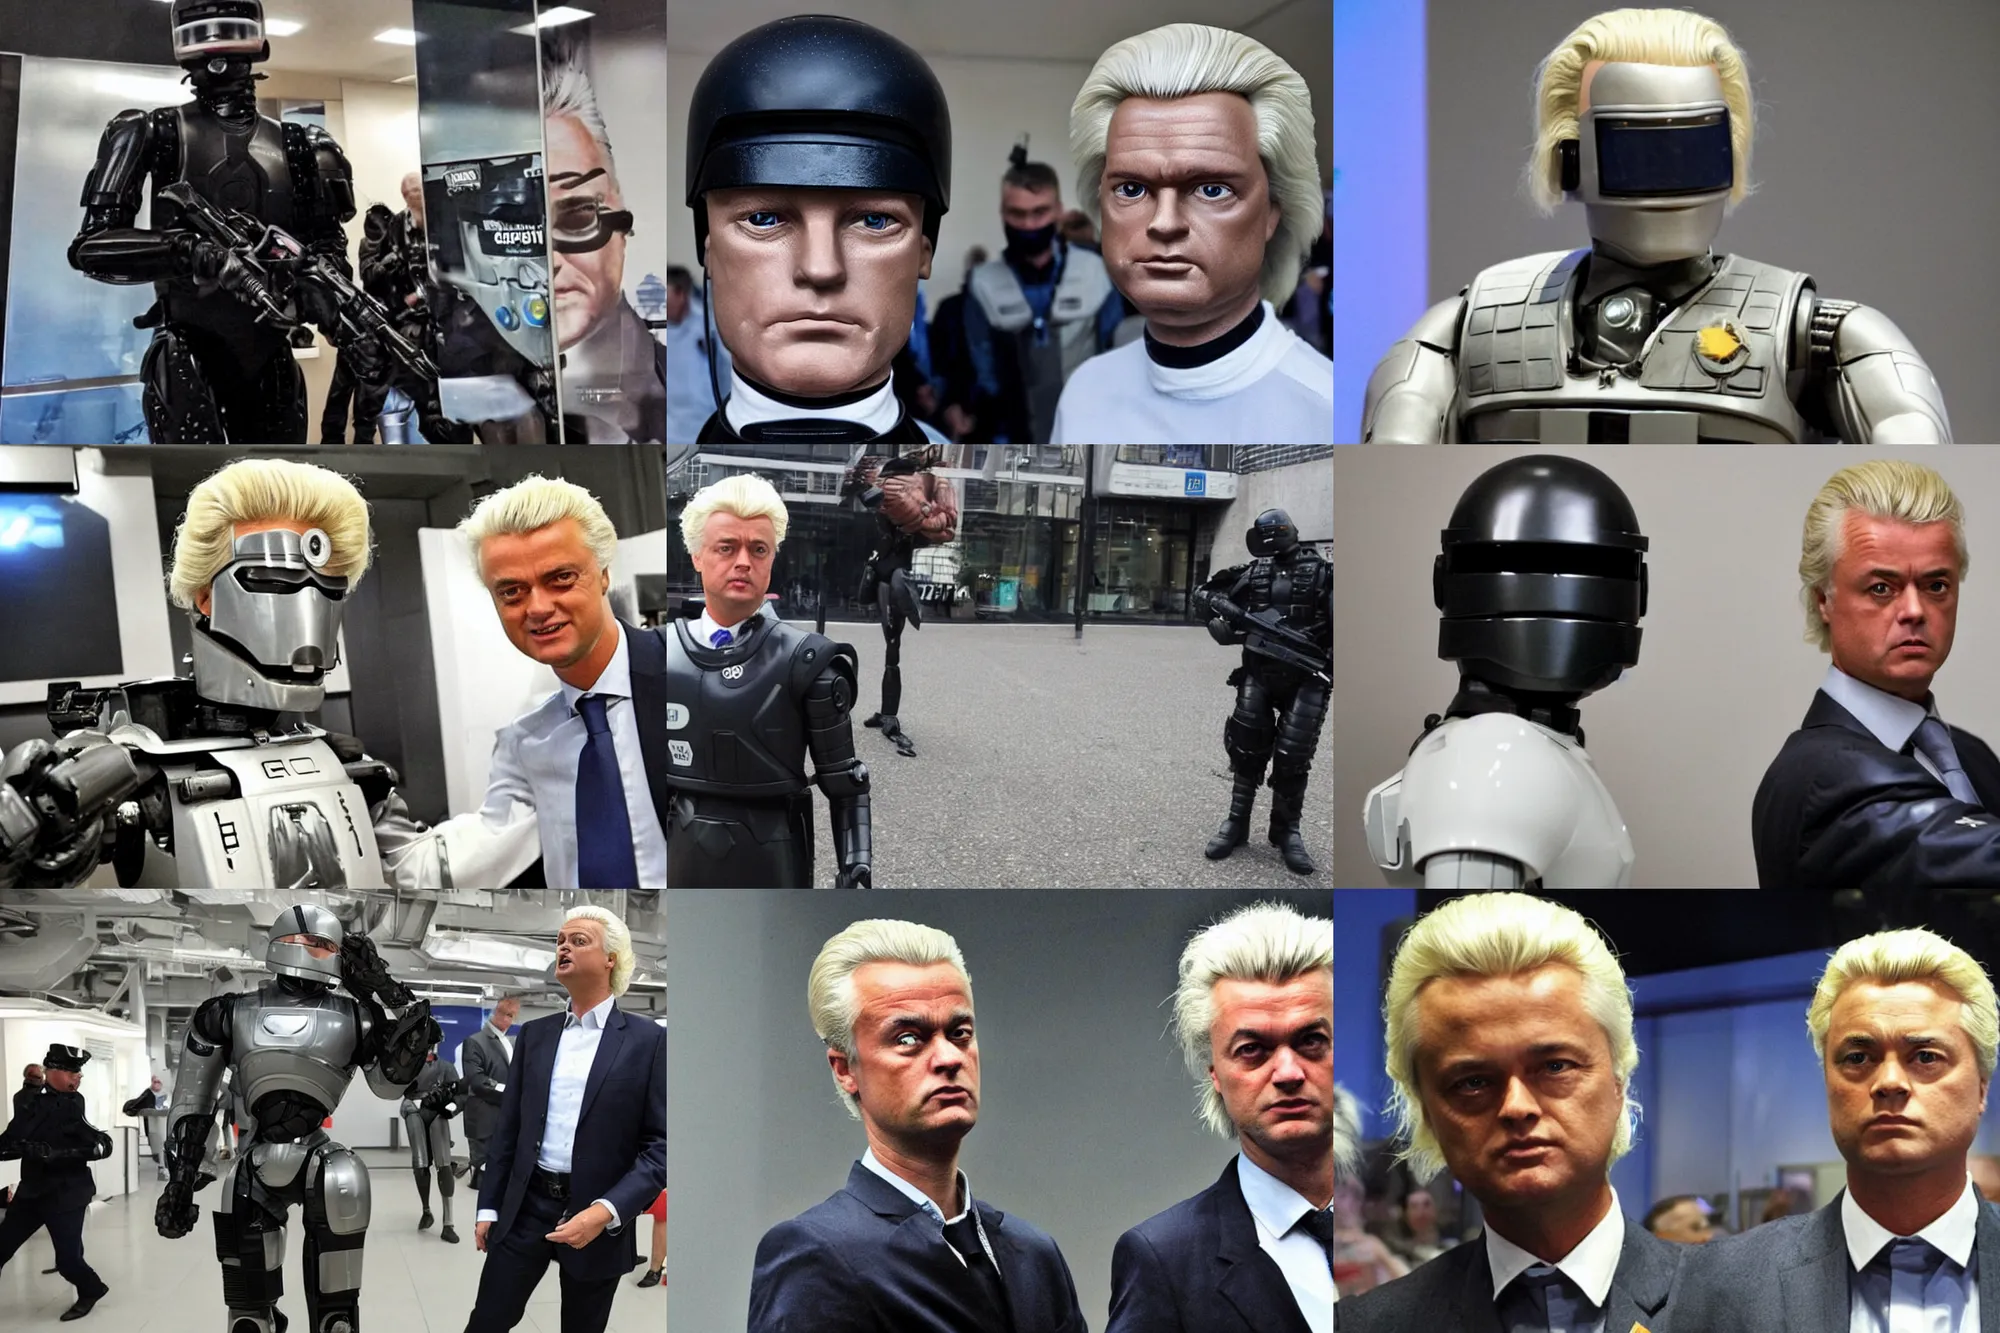 Prompt: Geert Wilders as Robocop,